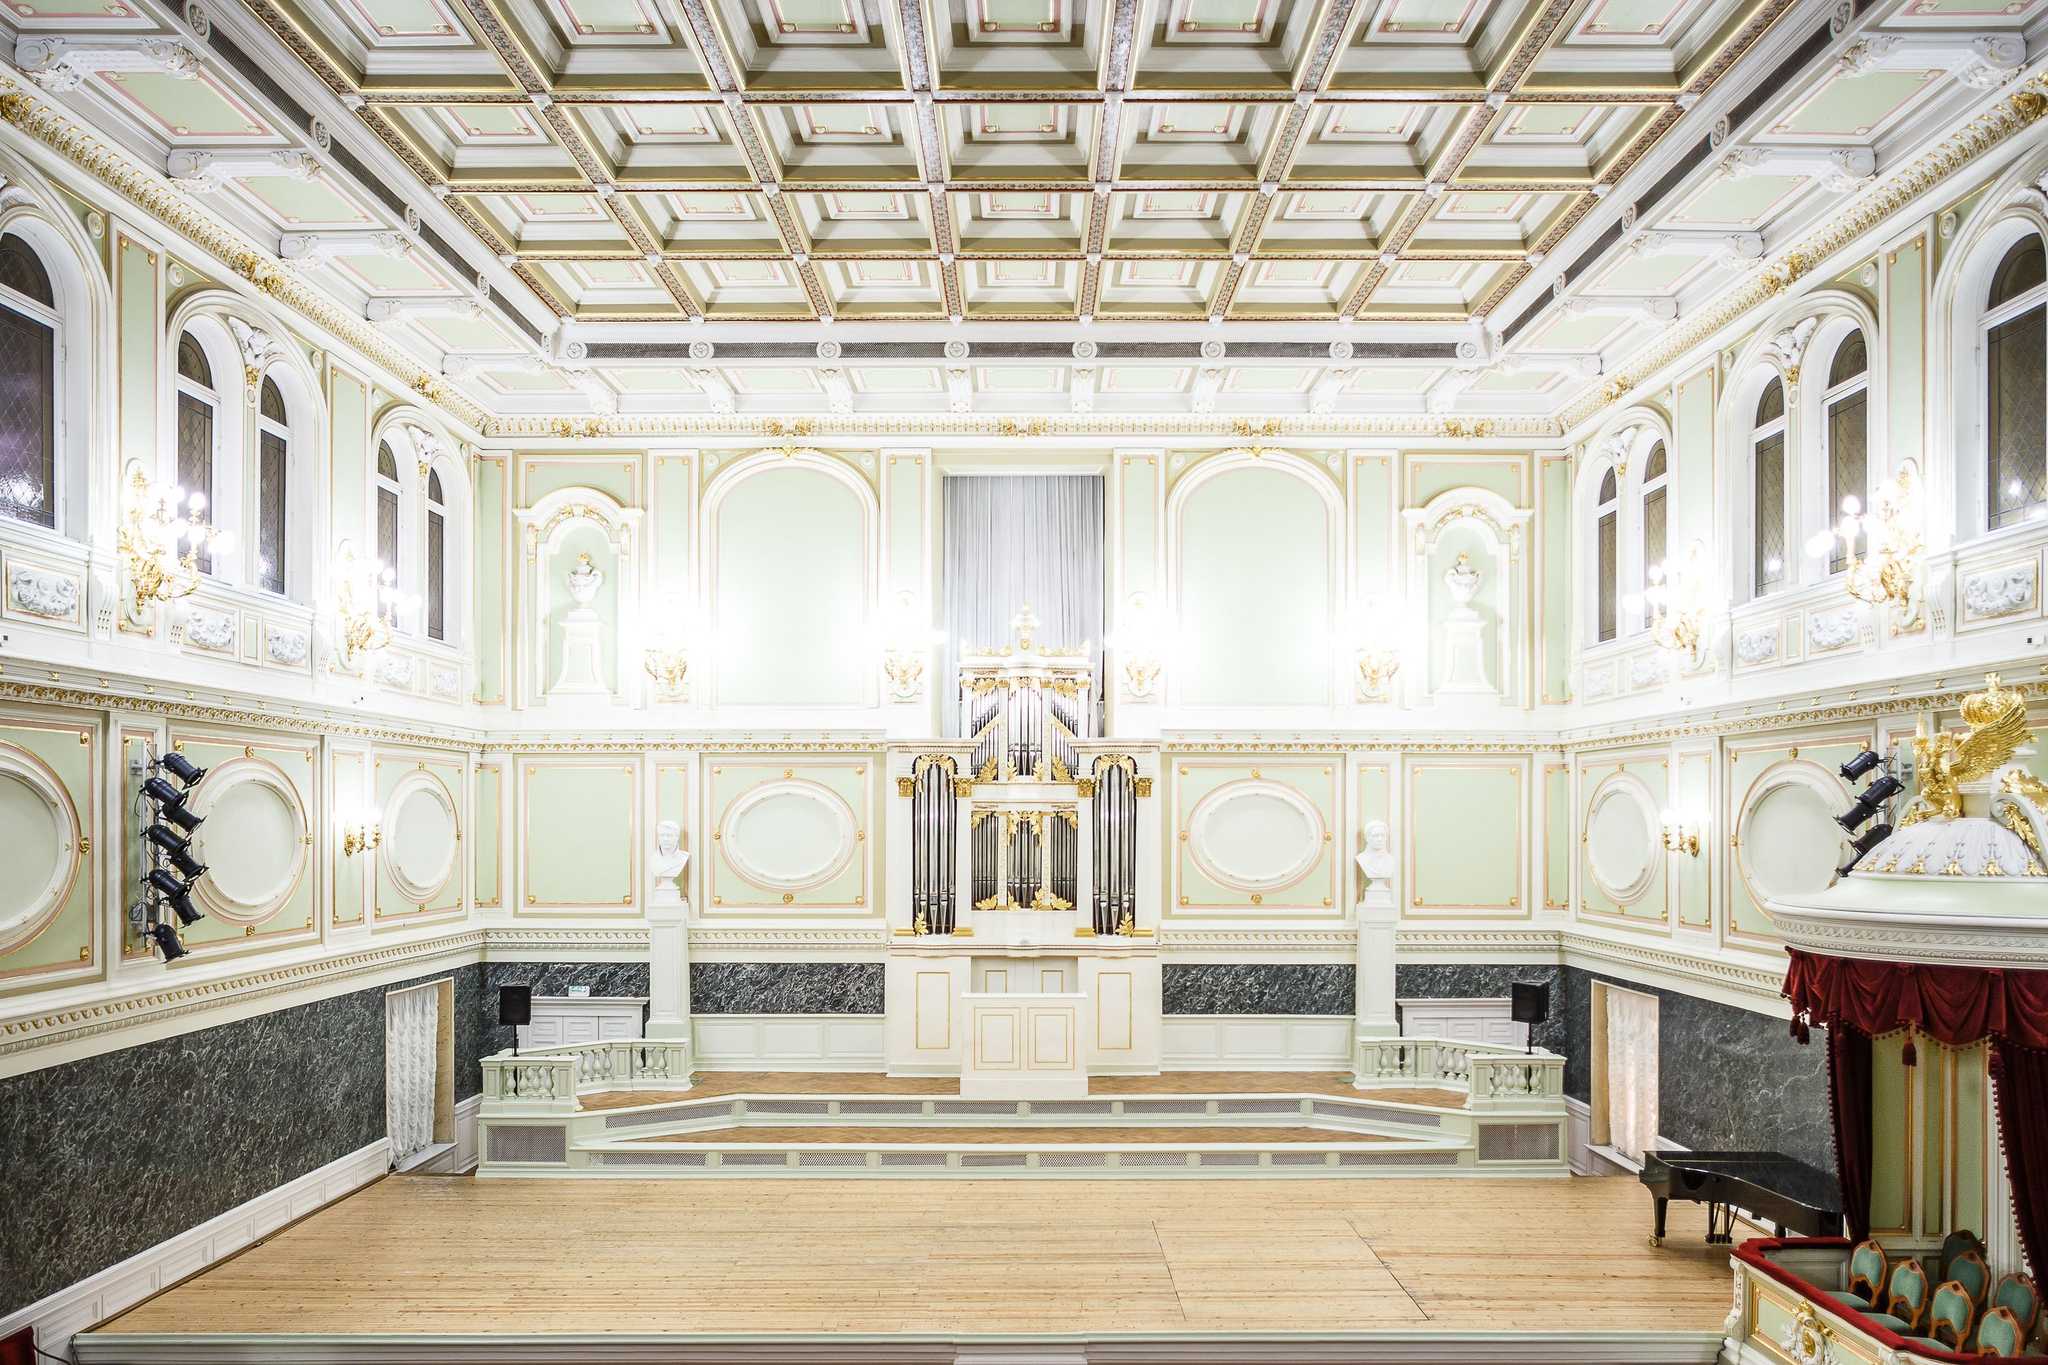 Государственная академическая капелла санкт-петербурга: дворы, залы, орган